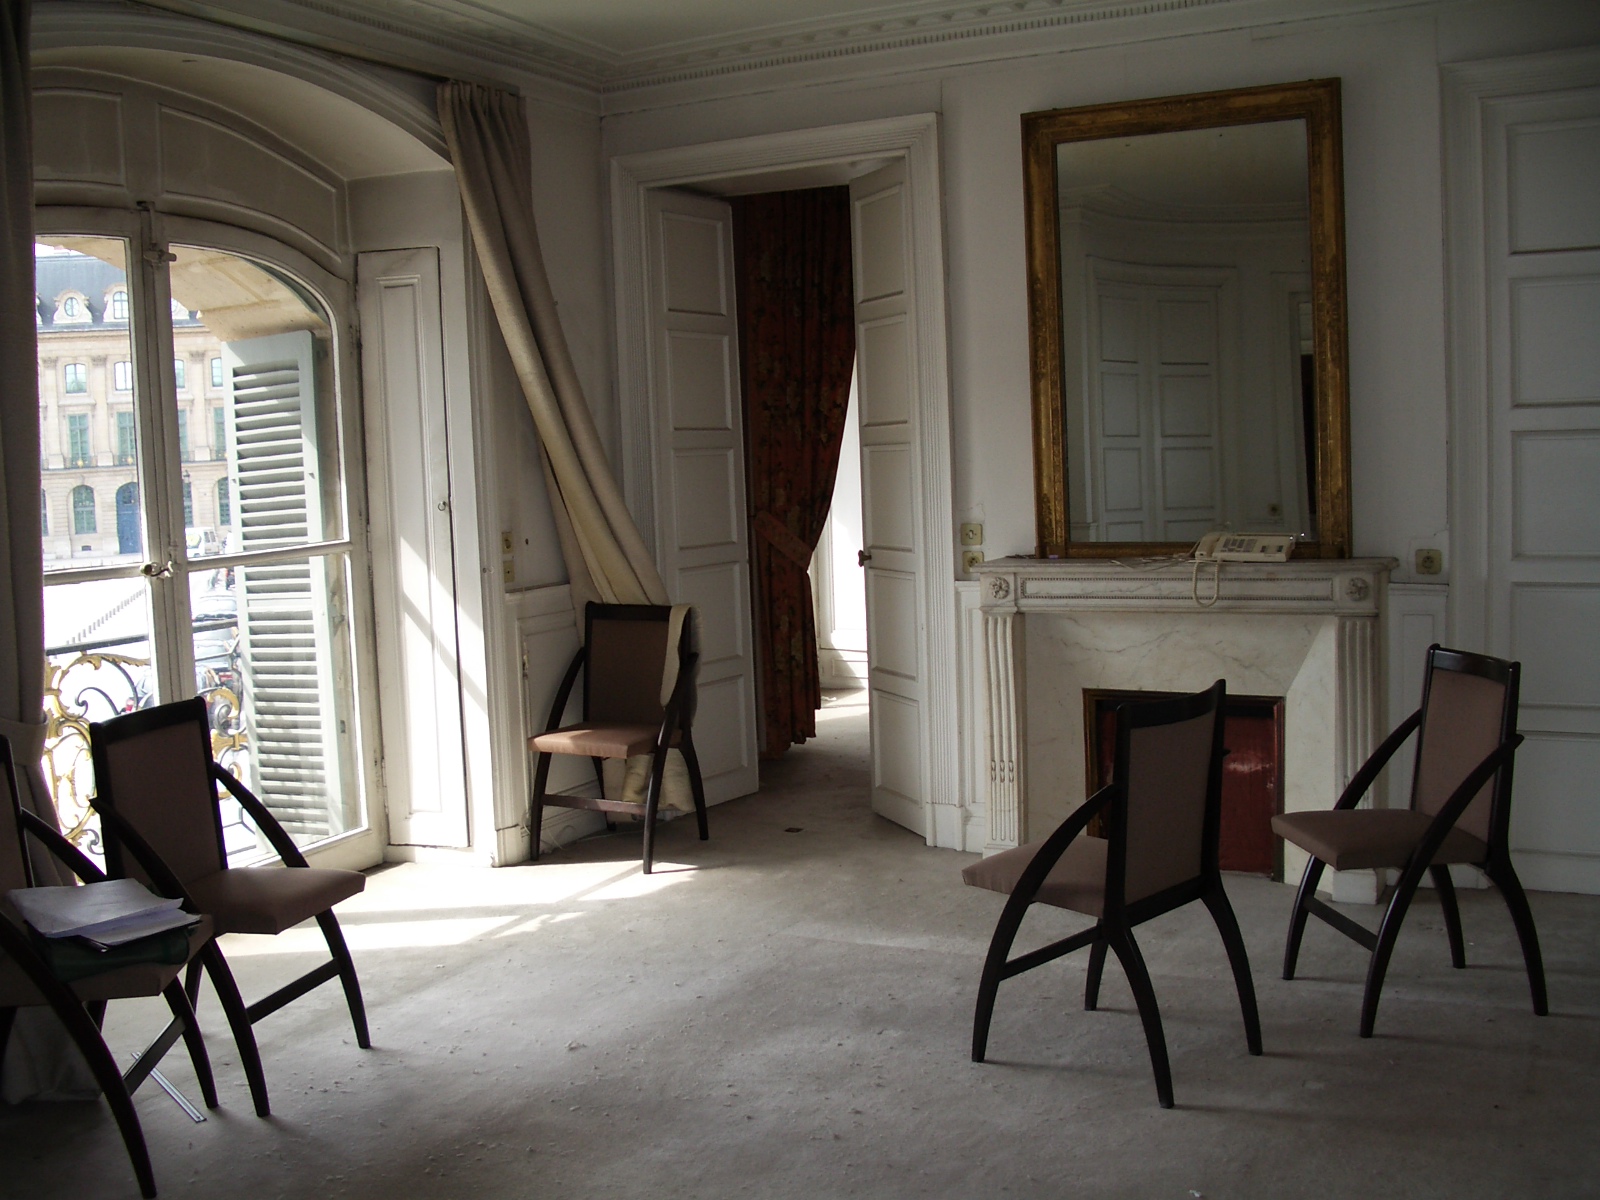 Logements de prestige de l'Hôtel d'Evreux - Place Vendôme